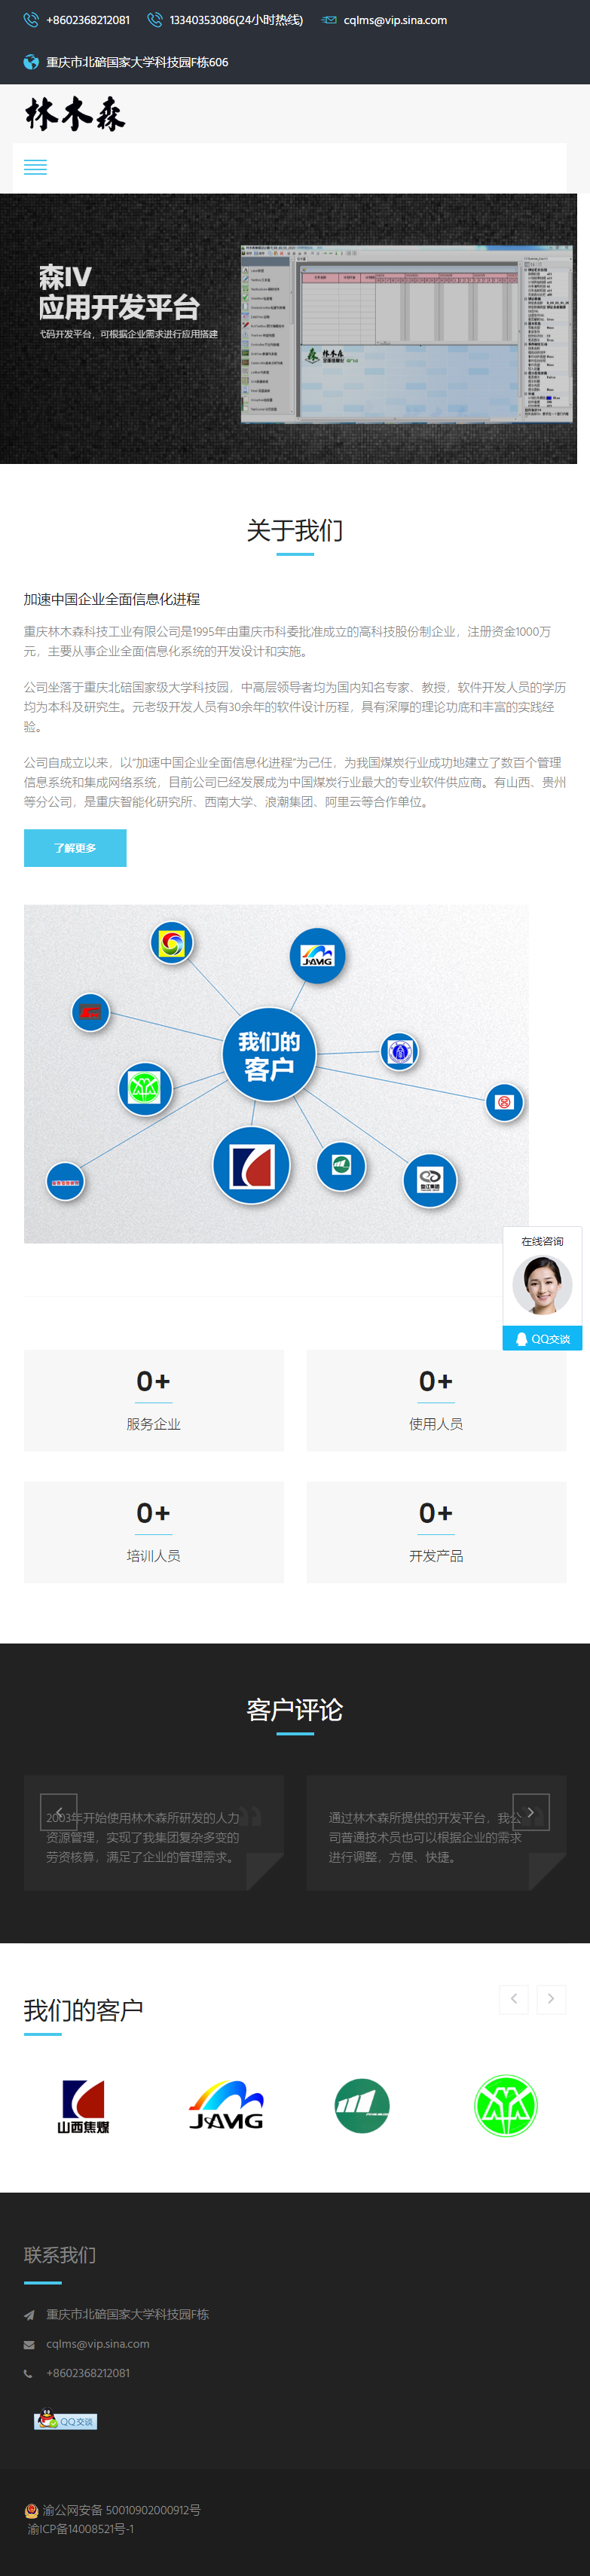 重庆林木森科技工业有限公司网站案例